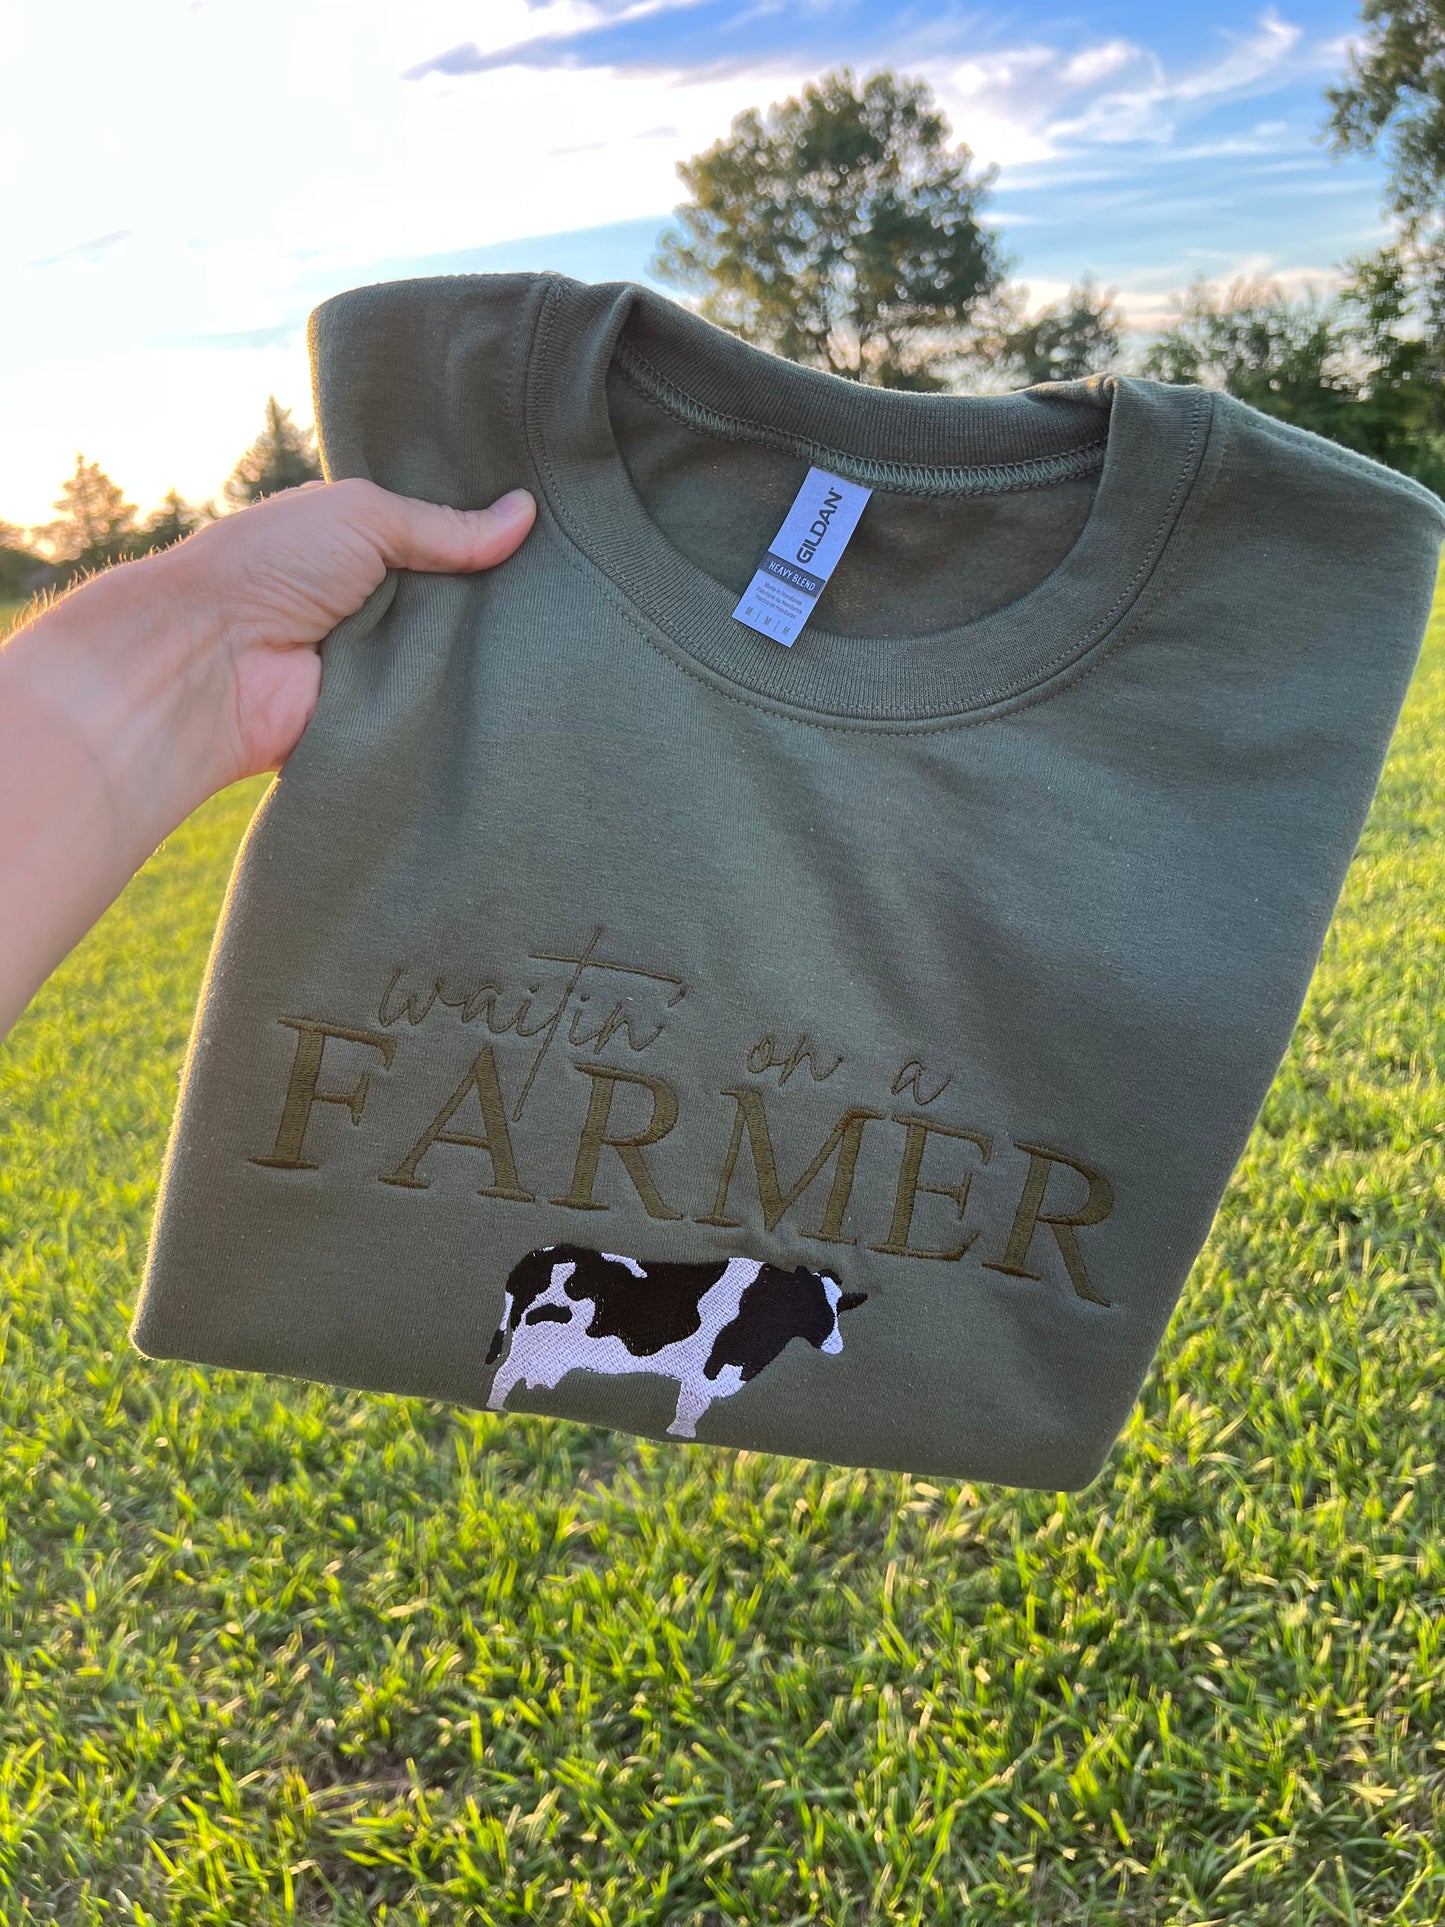 Waitin’ on a FARMER with a Cow